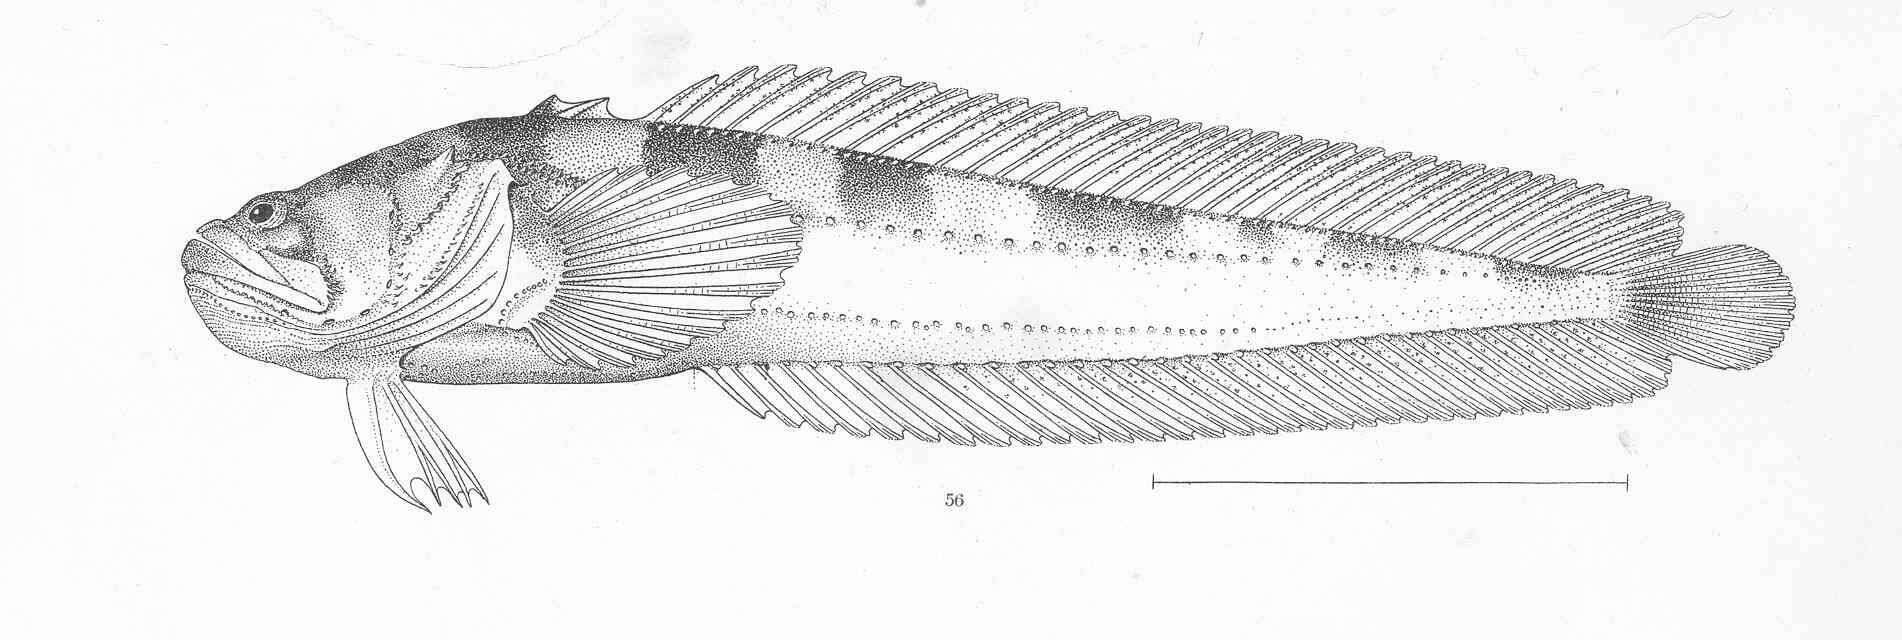 Image of midshipman fish